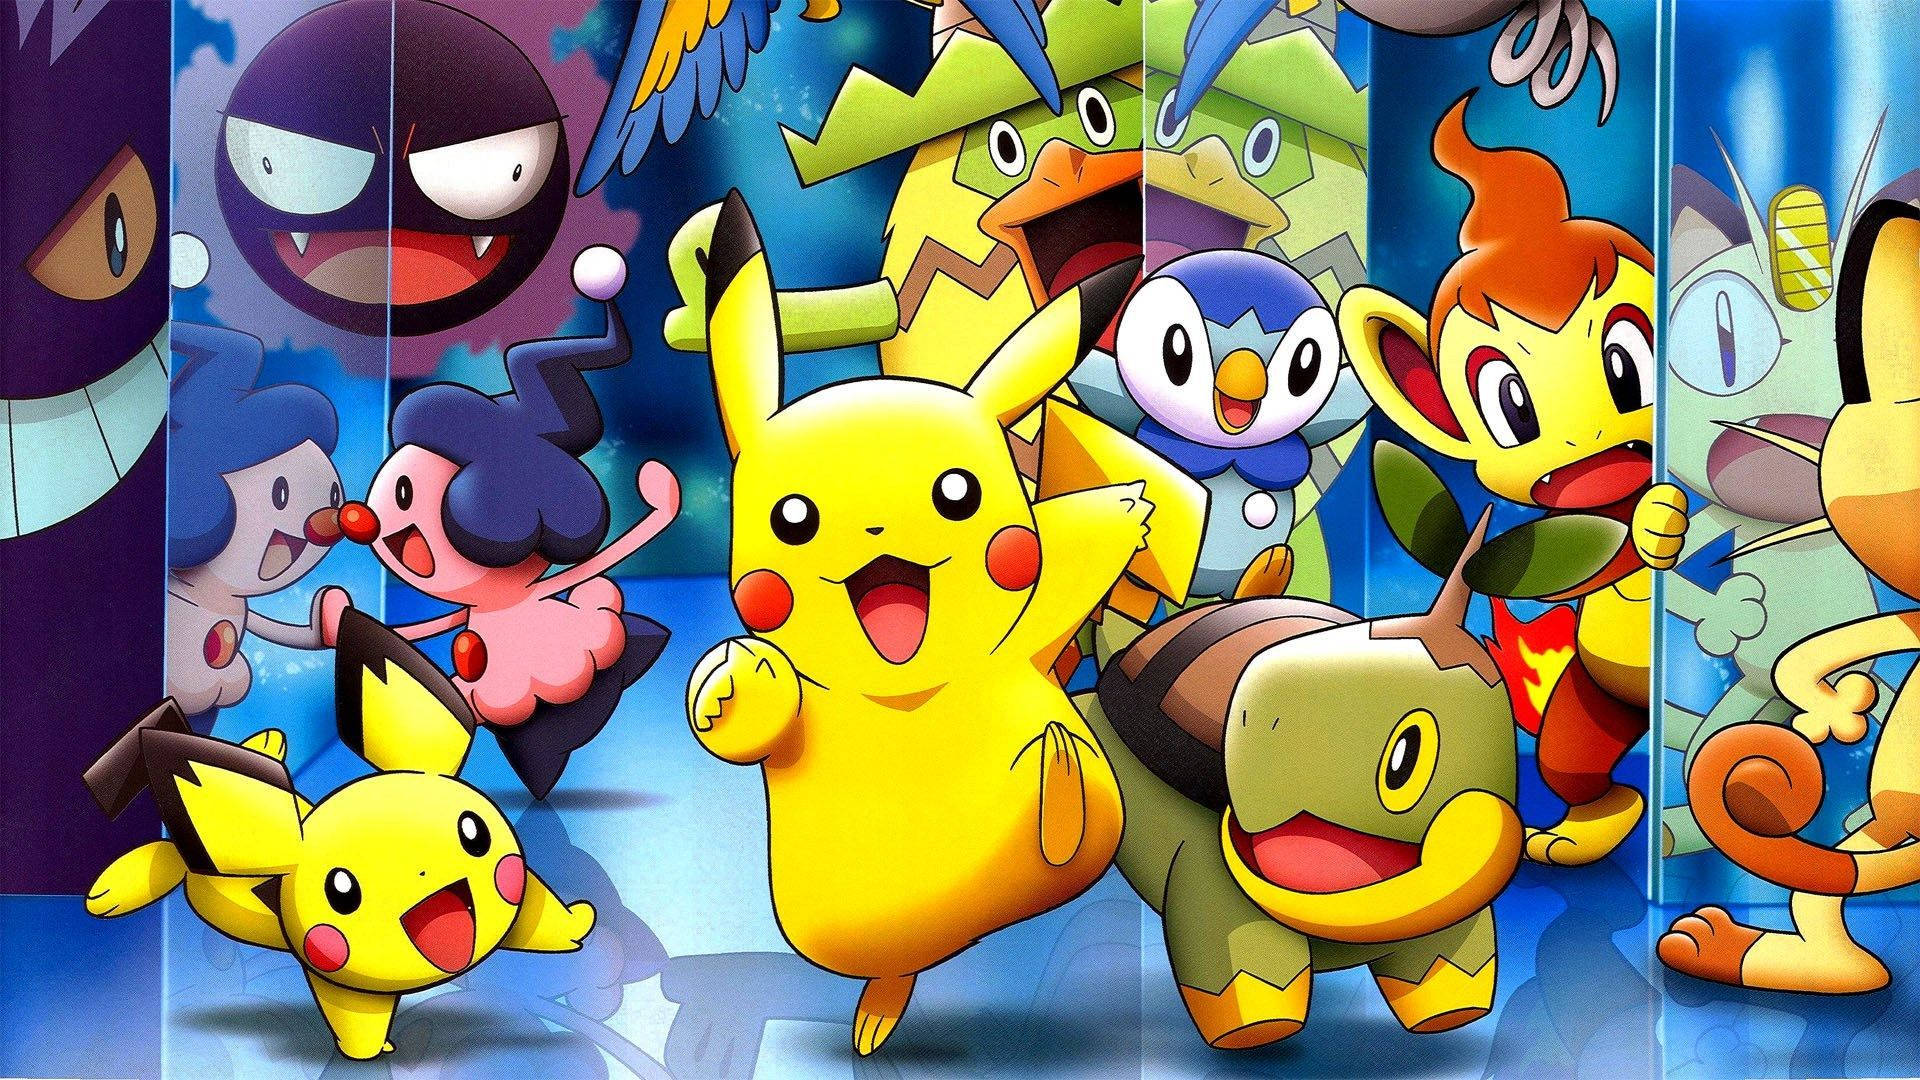 Pikachu And Friends Unite Background